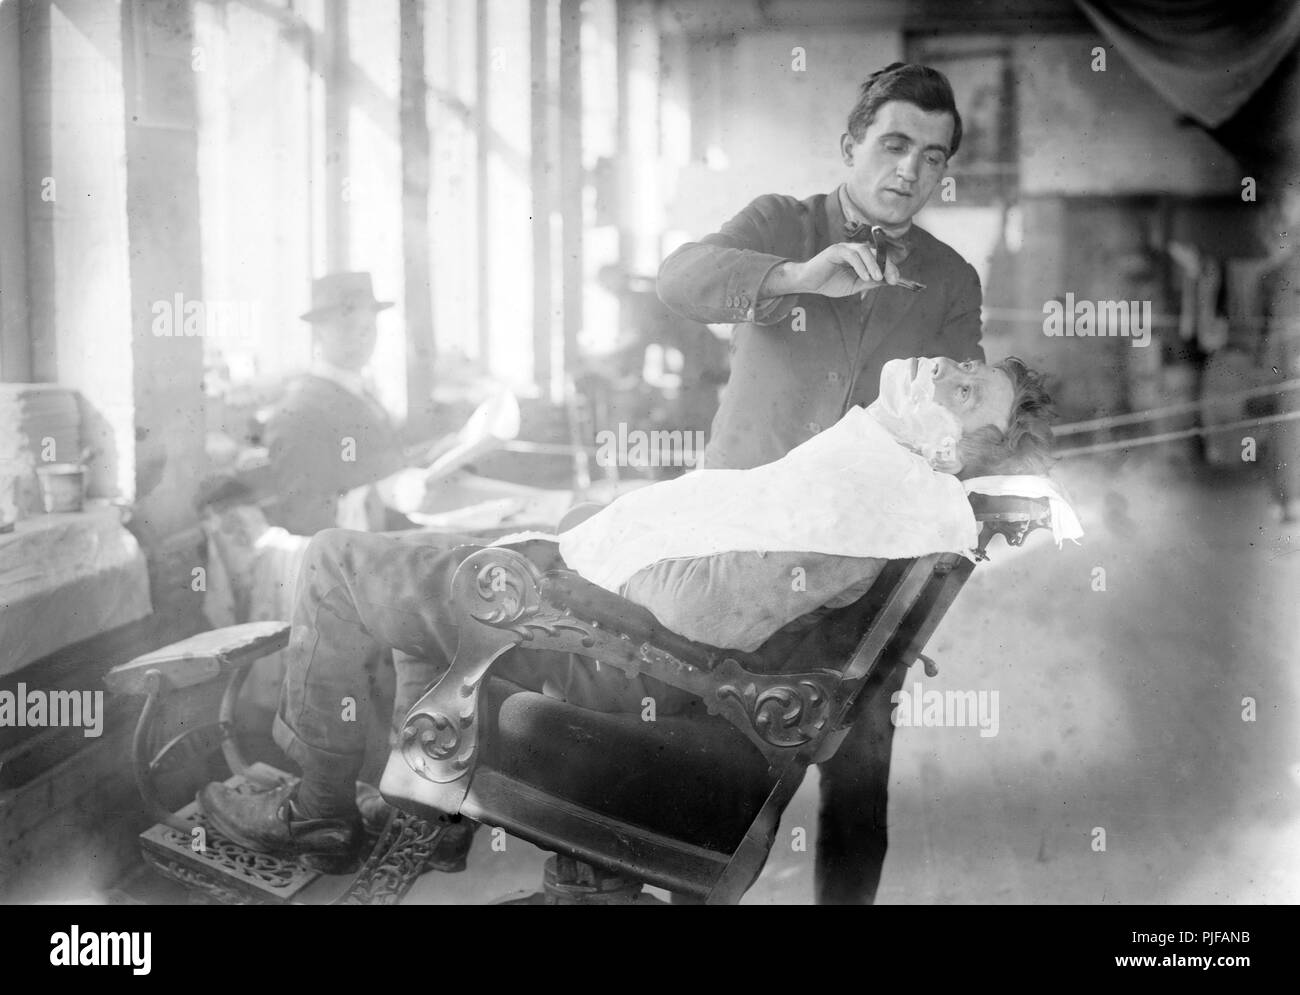 Barbiere, storica immagine di un barbiere dando una rasatura per un uomo, circa 1915 Foto Stock